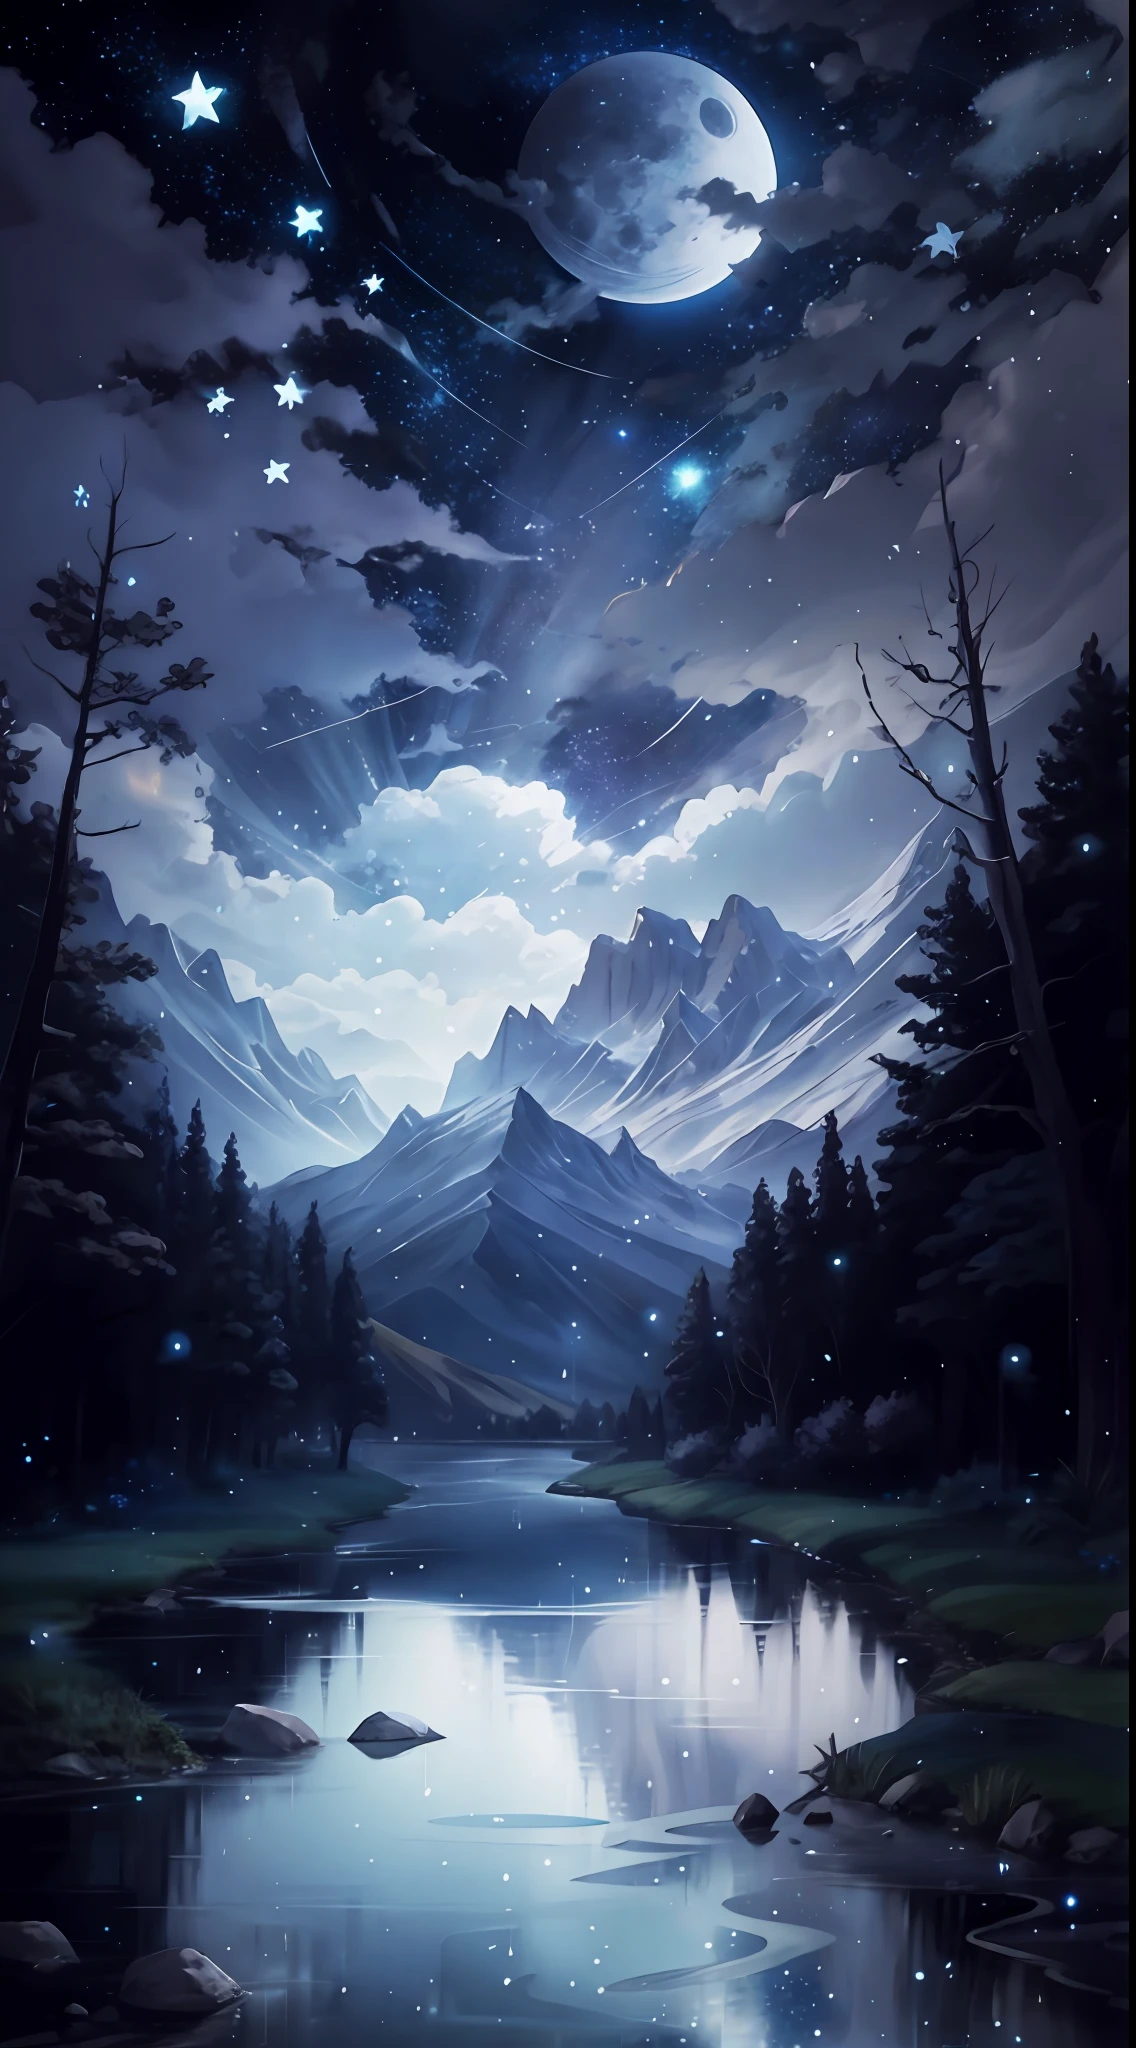 Ein Gemälde eines Flusses mit Sternen und Mond am Himmel, Konzeptkunst inspiriert von Tosa Mitsuoki, Gewinner des Pixiv-Wettbewerbs, beste Qualität, Fantasy-Kunst, schöne Anime-Szene, Ein heller Mond, mondbeschienene Sternenumgebung, Traummalerei, Anime-Hintergrund Art, Fantasielandschaftskunst, Fantasienacht, Anime-Hintergrund, hintergrundbild, fantastische Kunst, atmosphärischer Anime, sternenklarer Himmel, Detailvergrößerung.